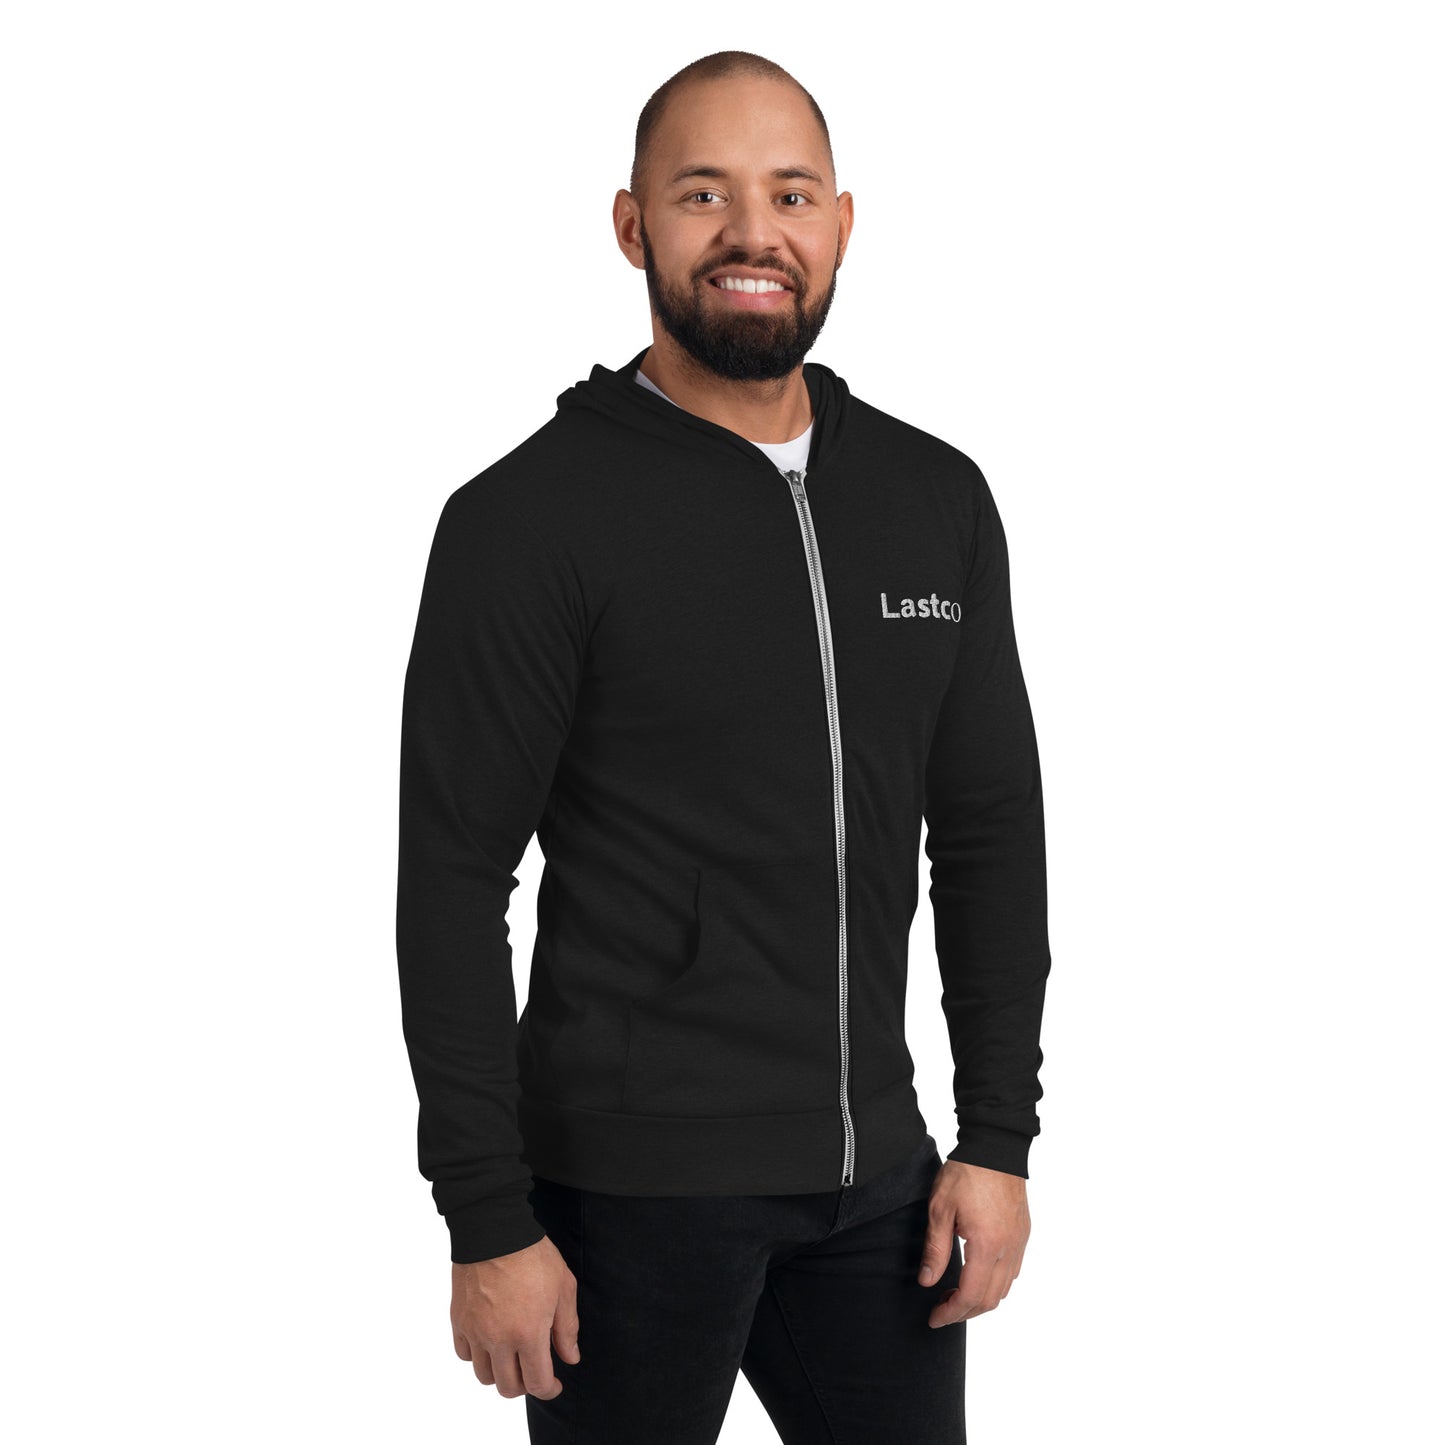 Lastco Authoritative White Logo Unisex zip hoodie